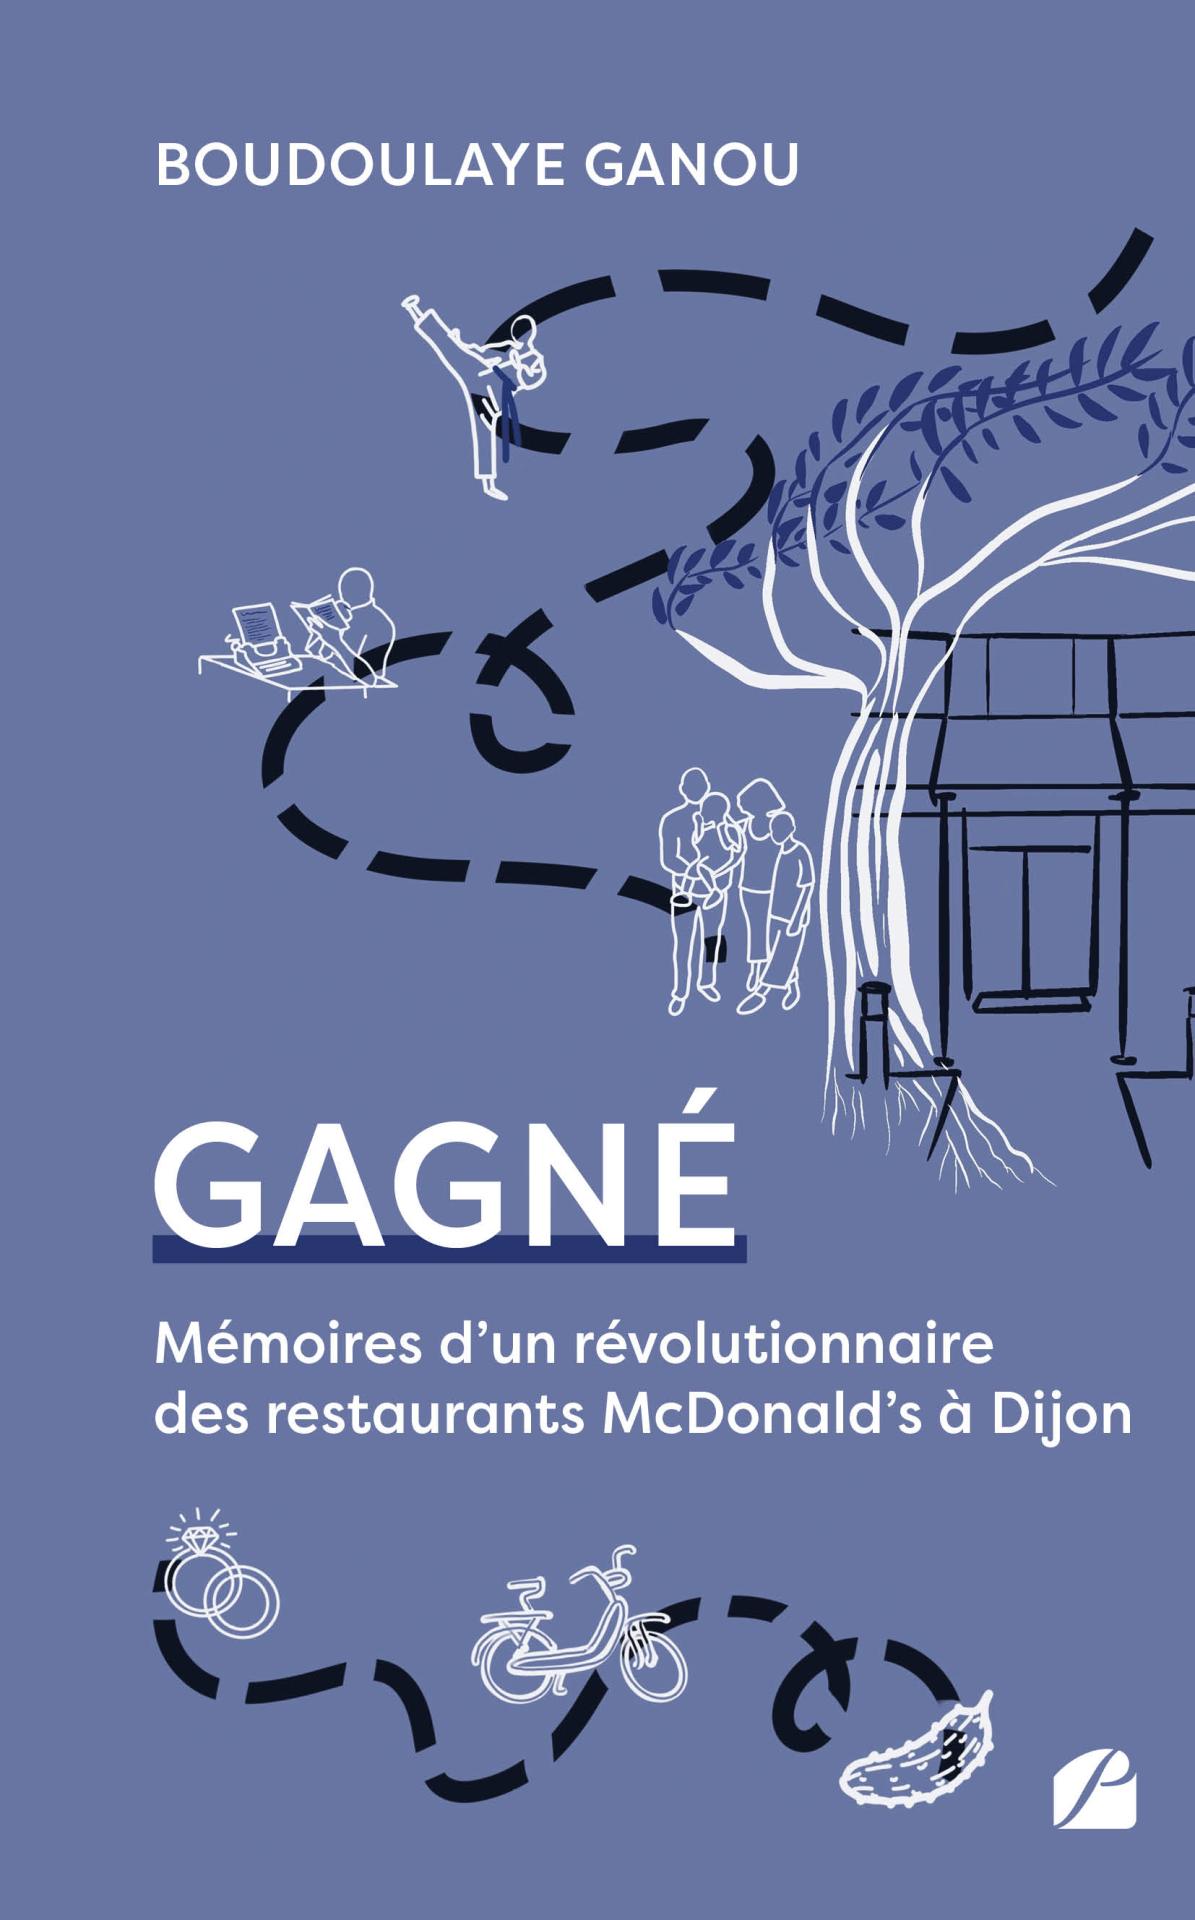 Gagné - Ganou